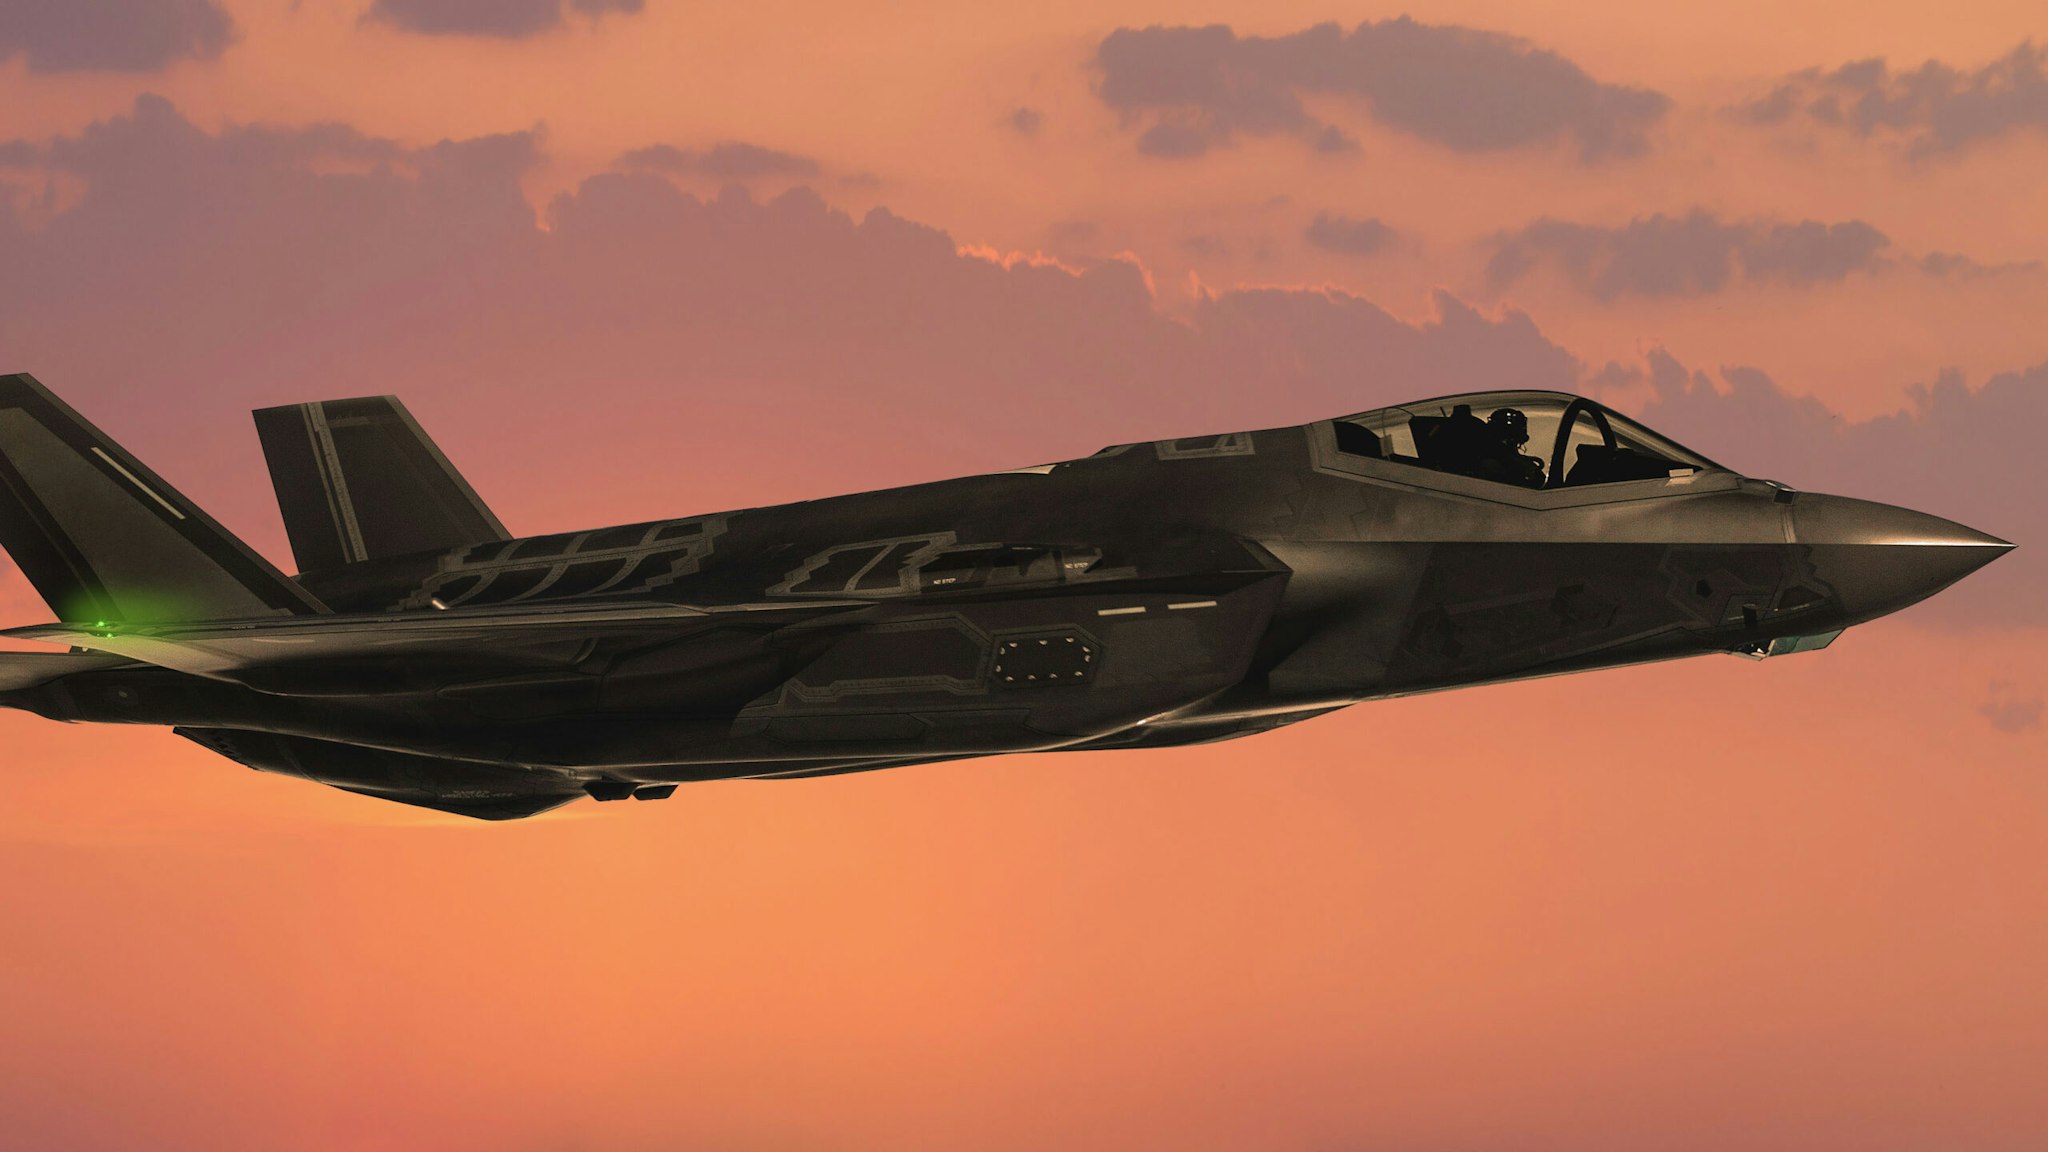 F-35 Fıghter Jets in flight at sunset